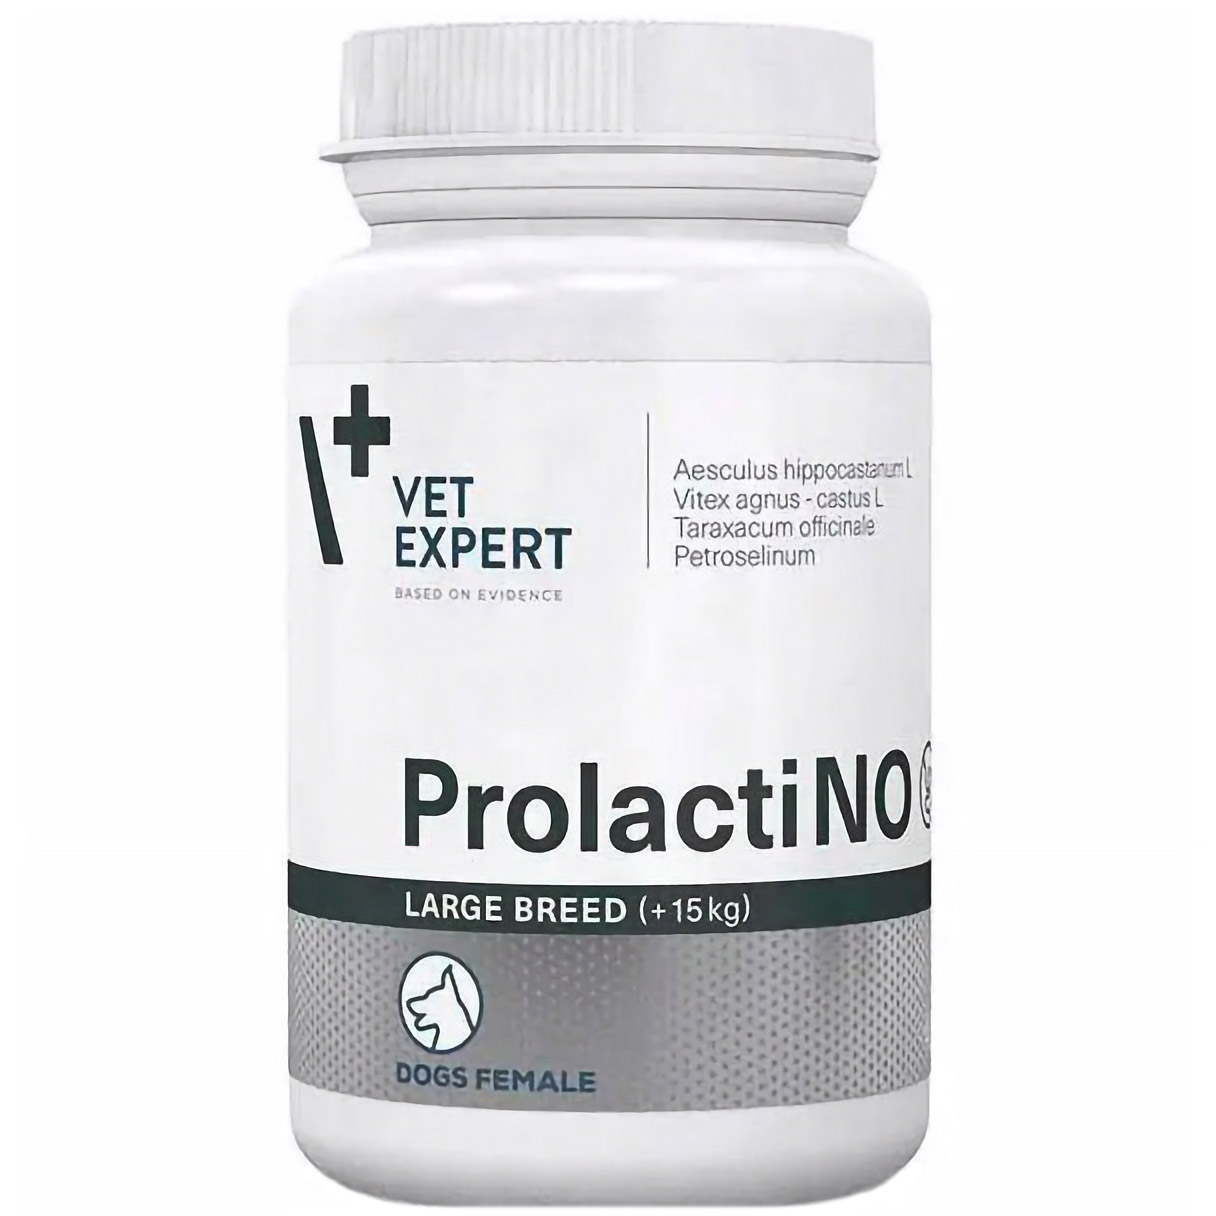 Харчова добавка Vet Expert ProlactiNO Large Breed при помилковій вагітності у собак великих порід, 40 таблеток - фото 1